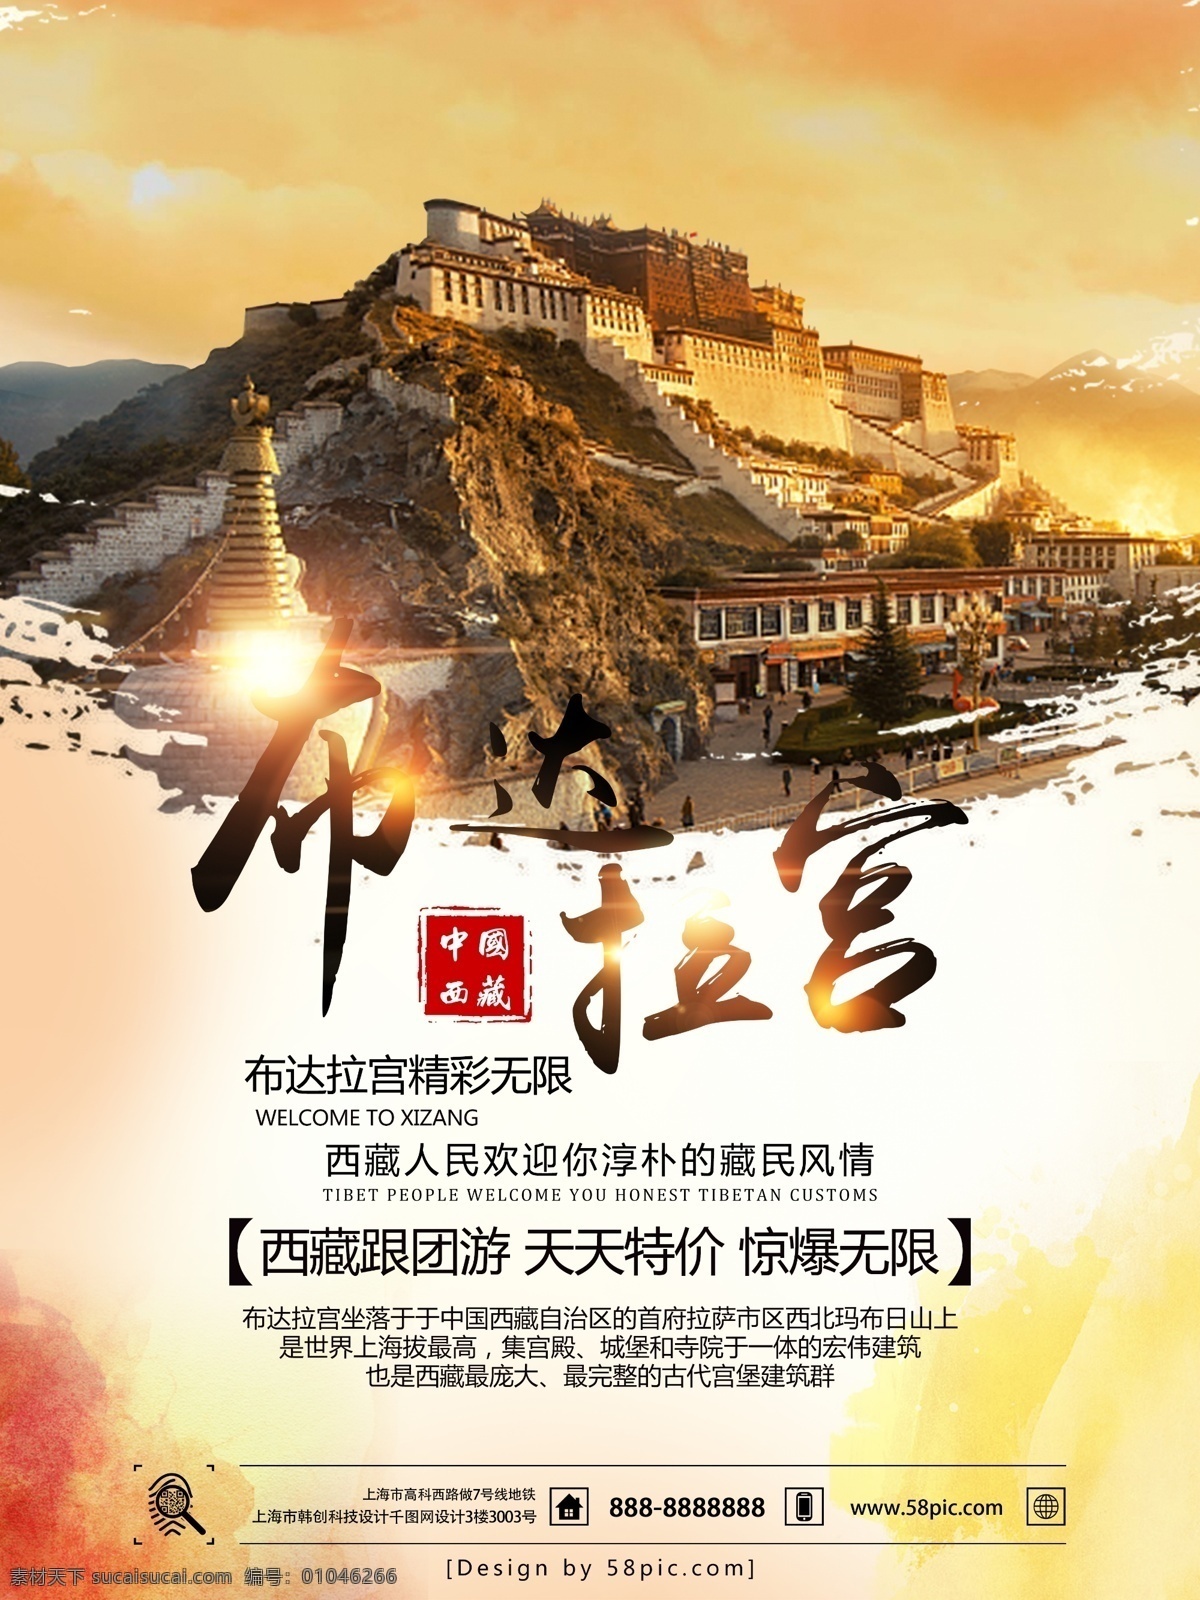 西藏 布达拉宫 旅游 宣传海报 景色海报 风景海报 旅游海报 西藏旅游